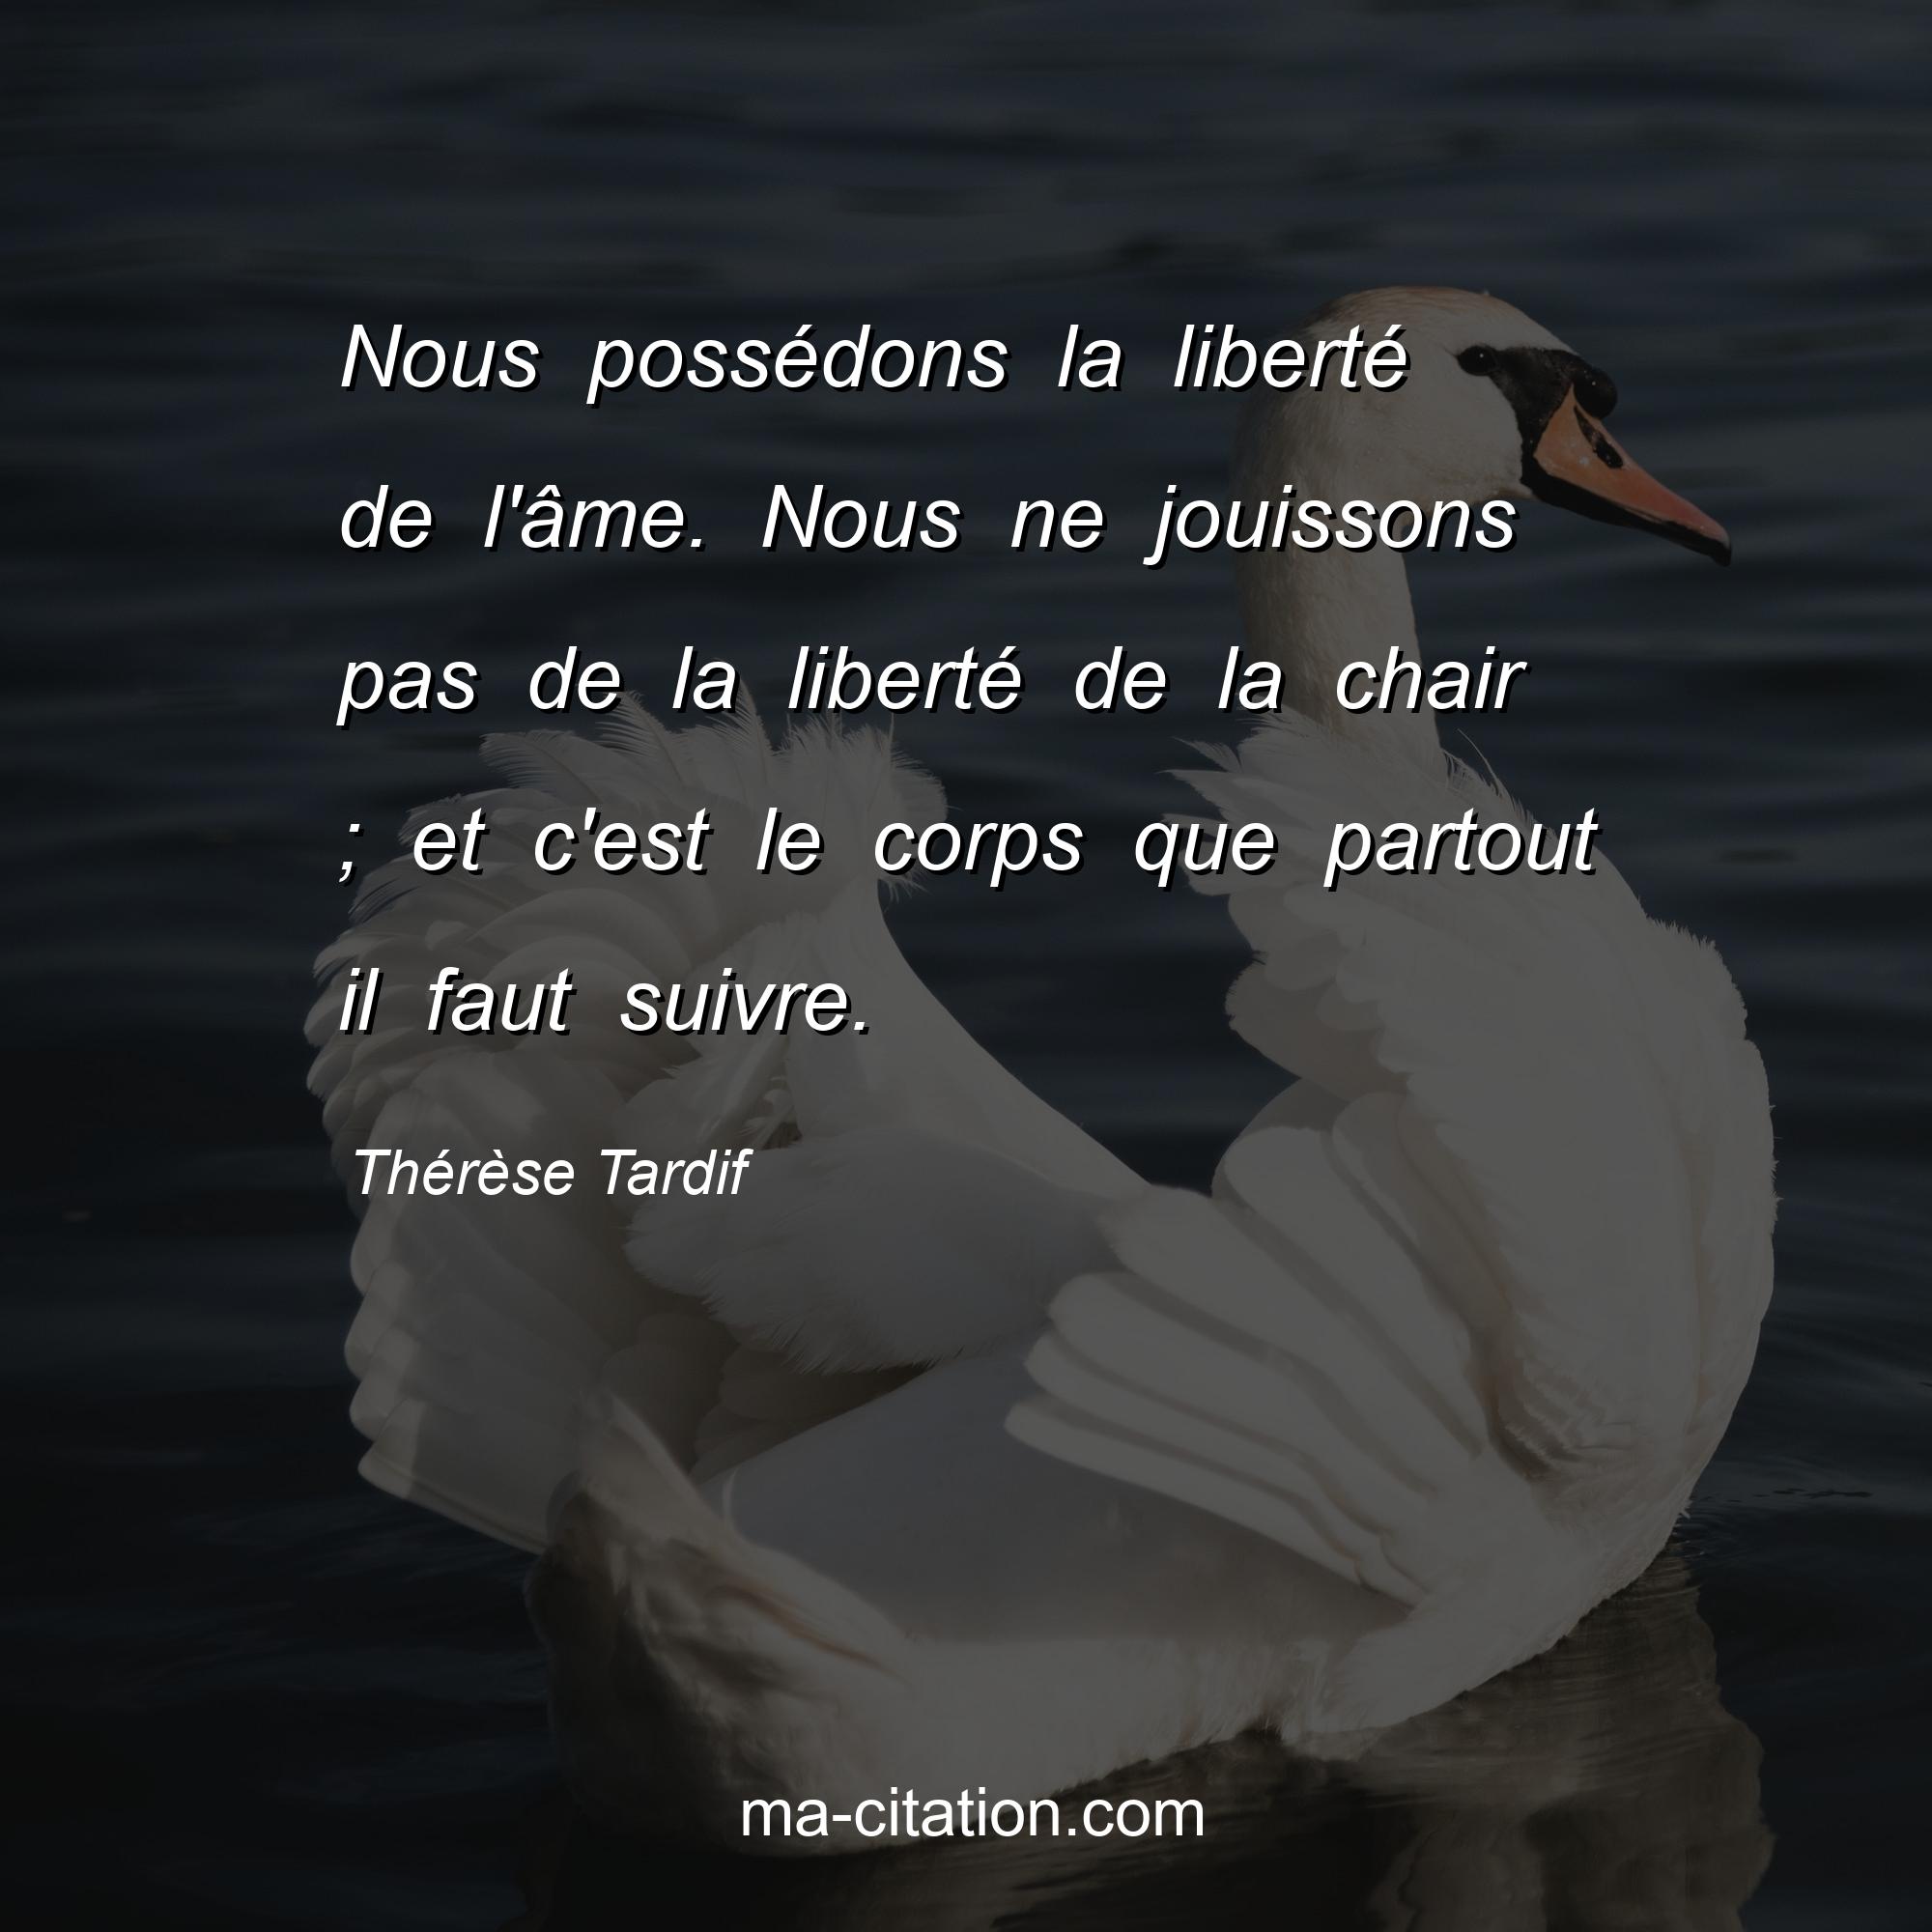 Thérèse Tardif : Nous possédons la liberté de l'âme. Nous ne jouissons pas de la liberté de la chair ; et c'est le corps que partout il faut suivre.